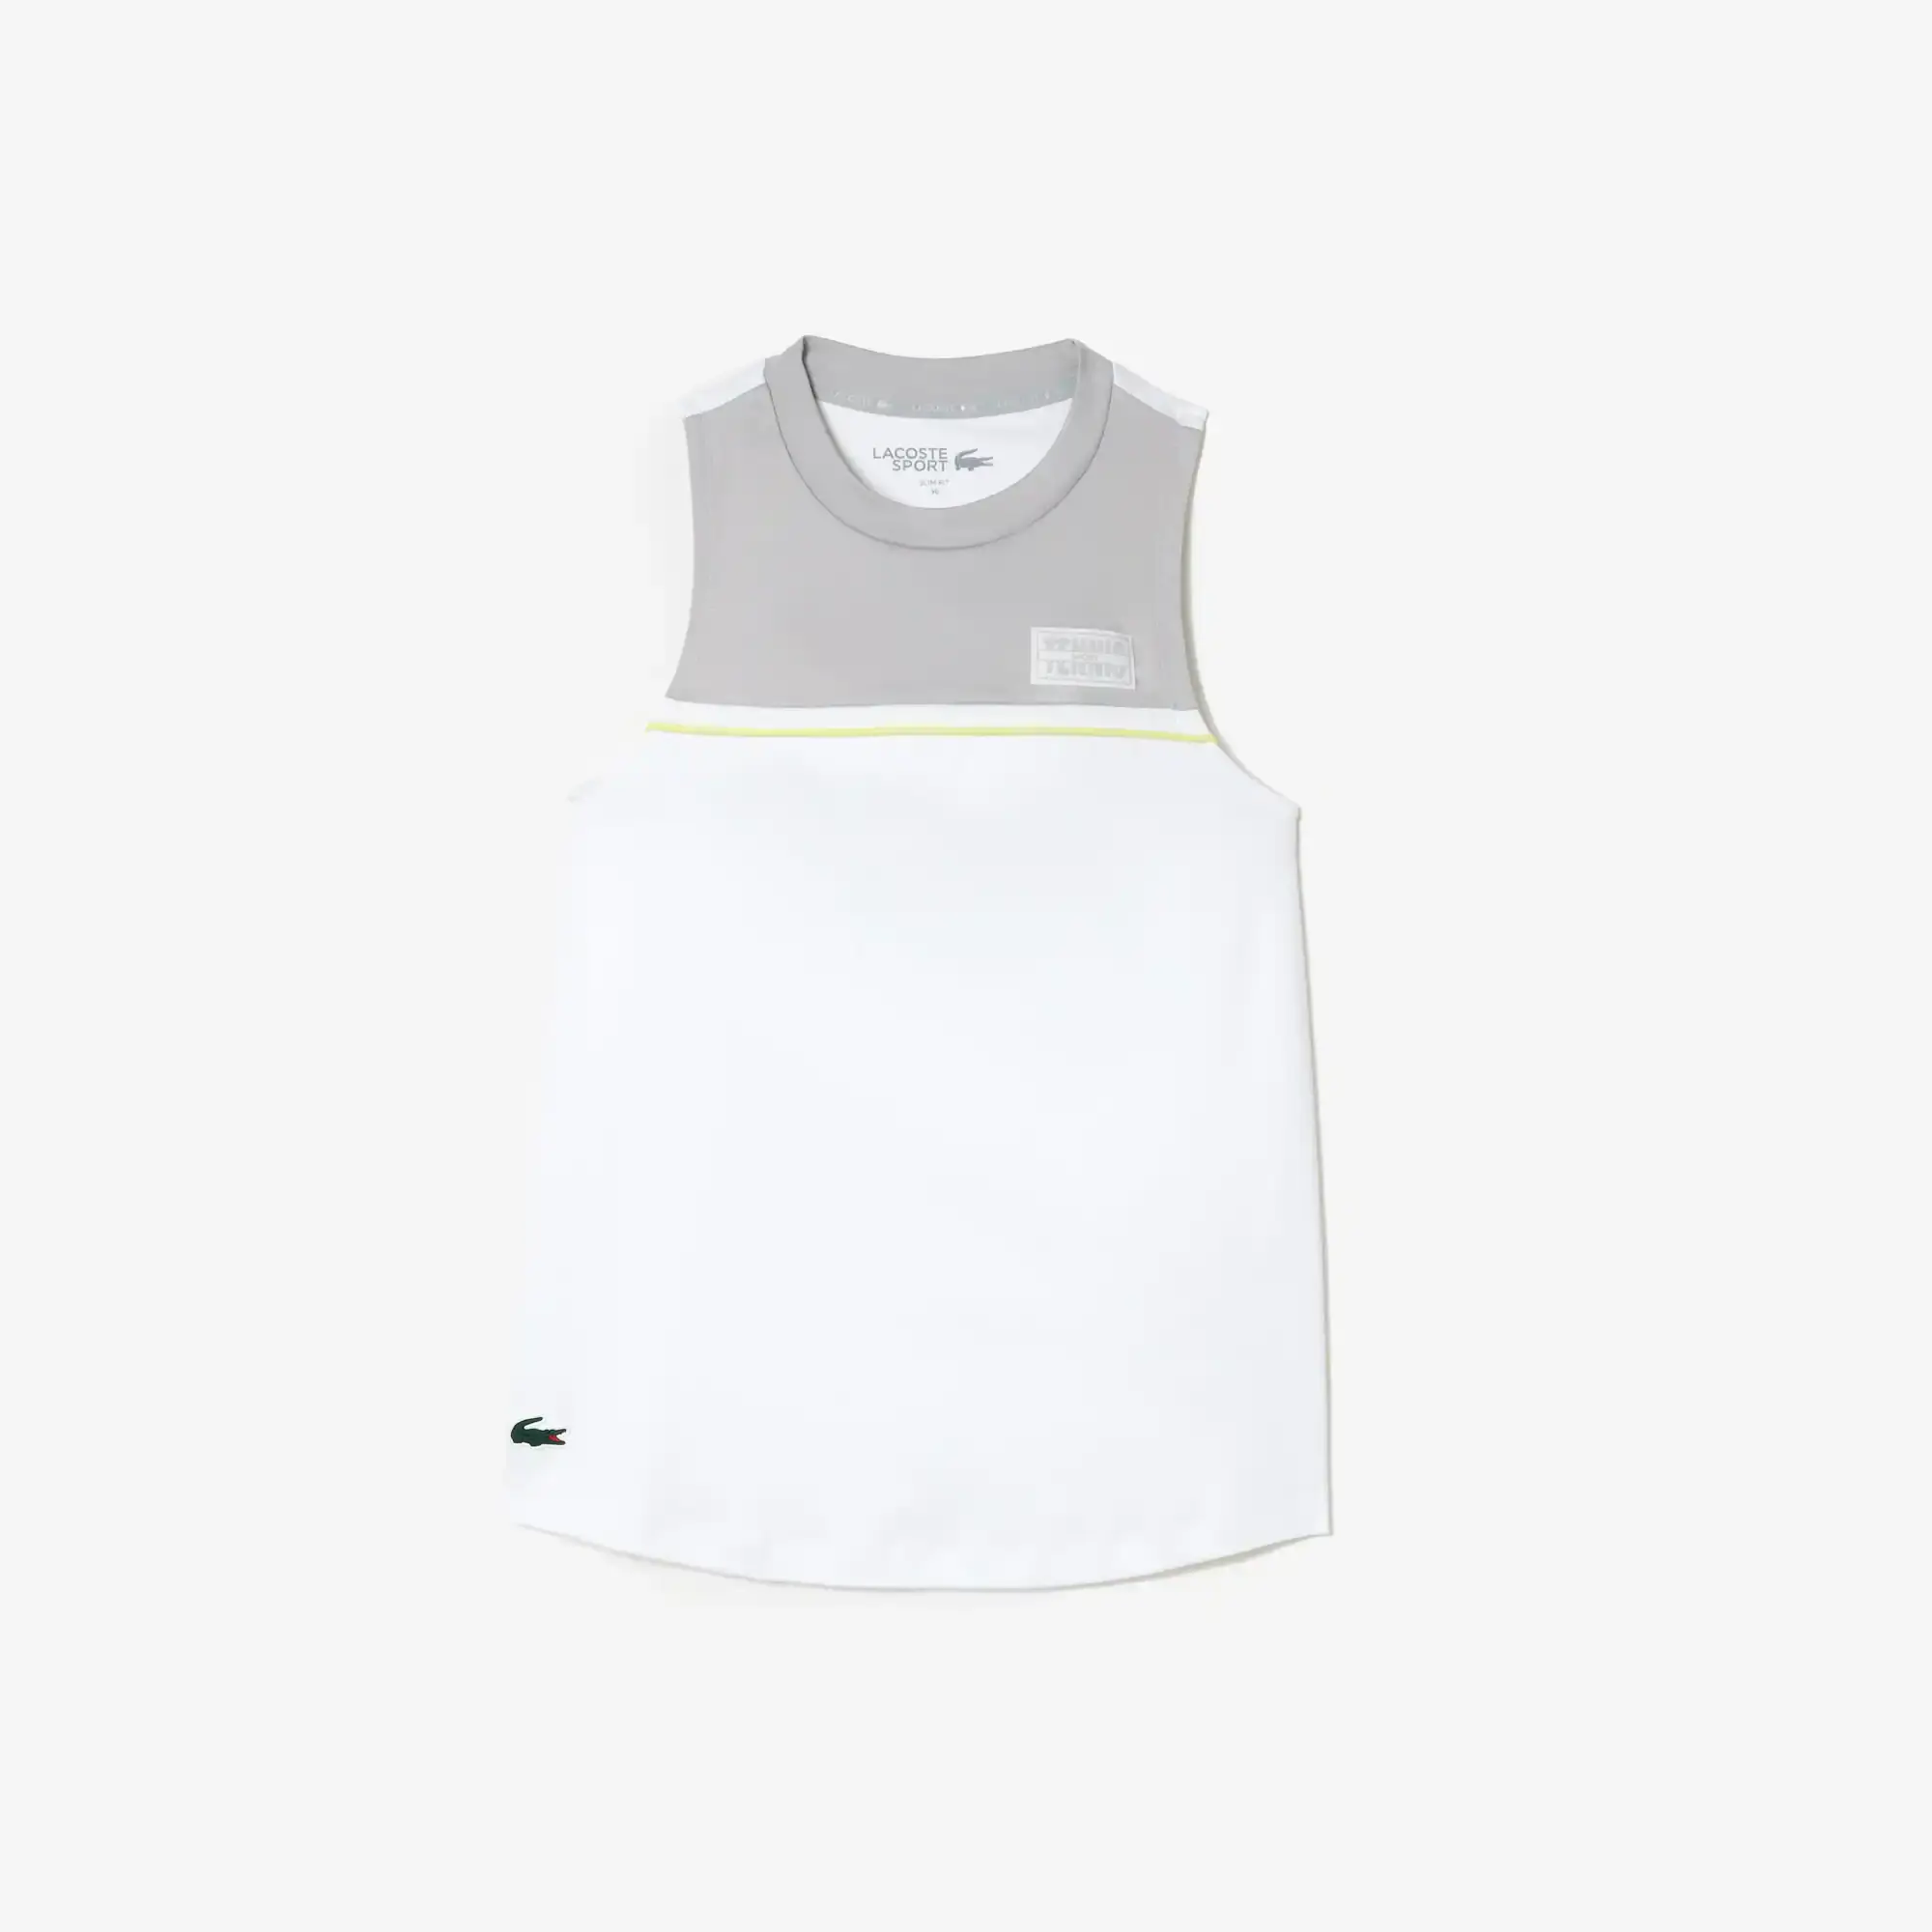 Lacoste Women's Contrast Stretch Cotton Sport T-Shirt. 1